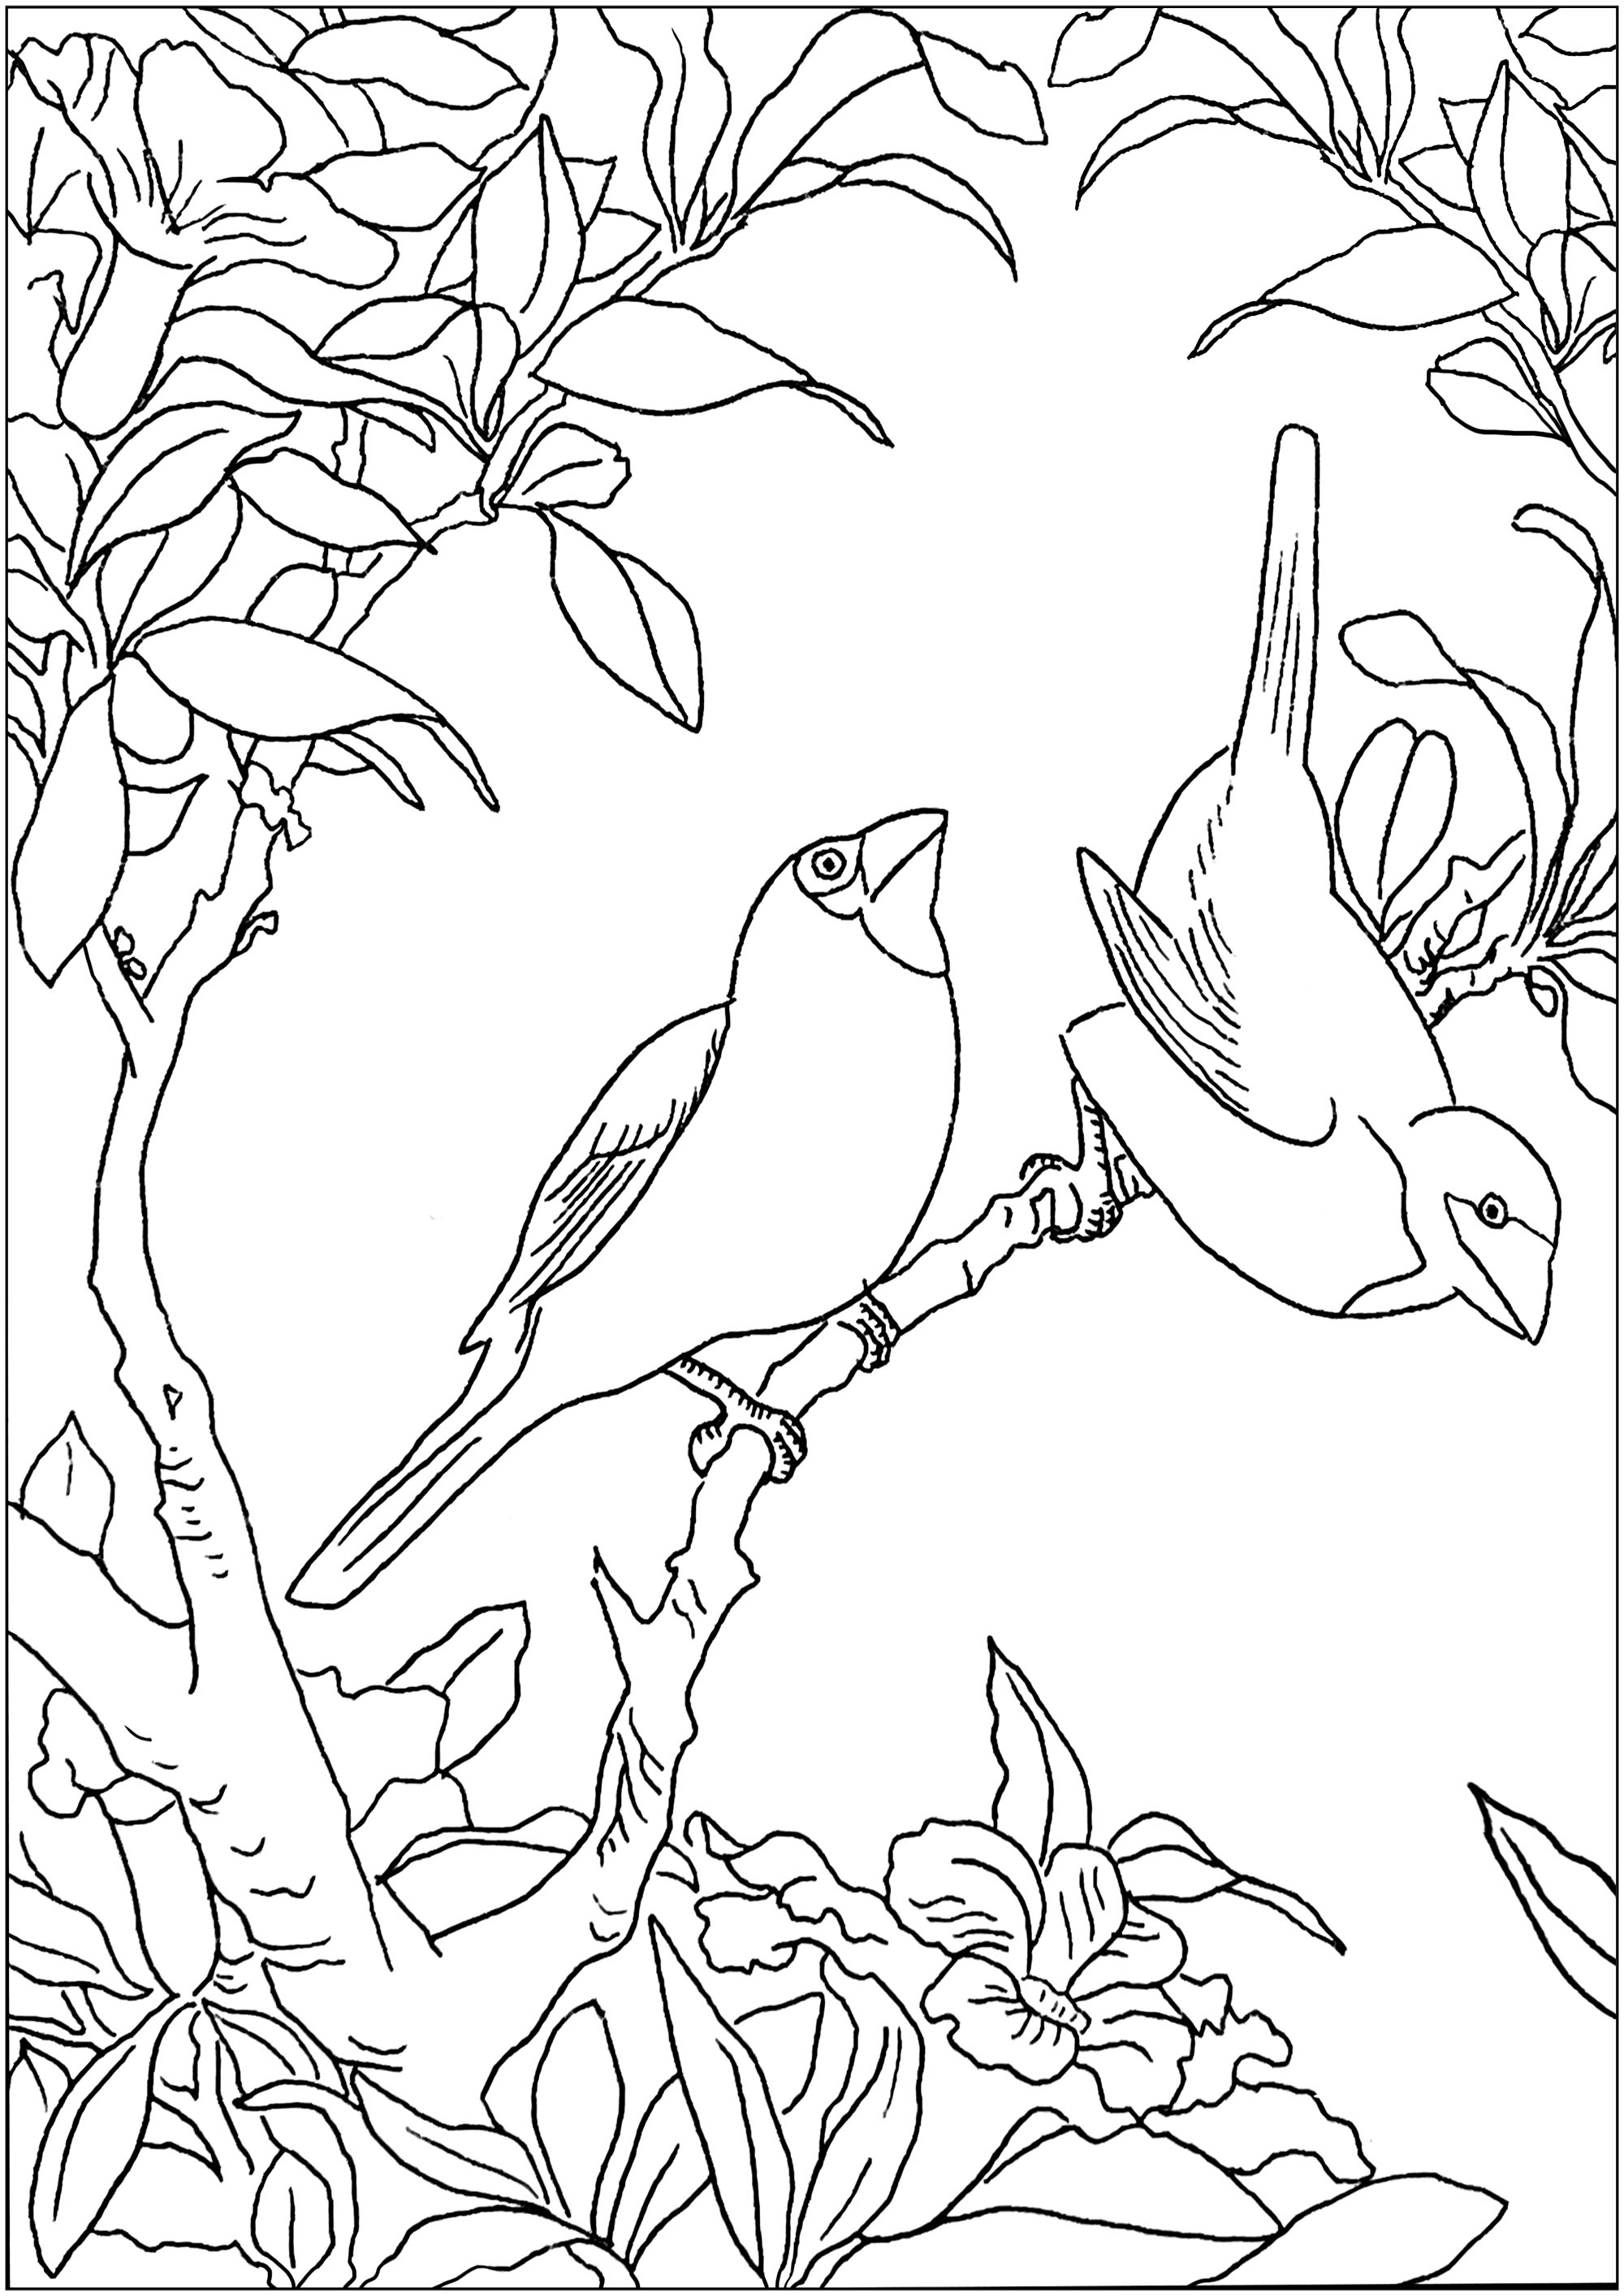 Deux petits oiseaux sur une branche